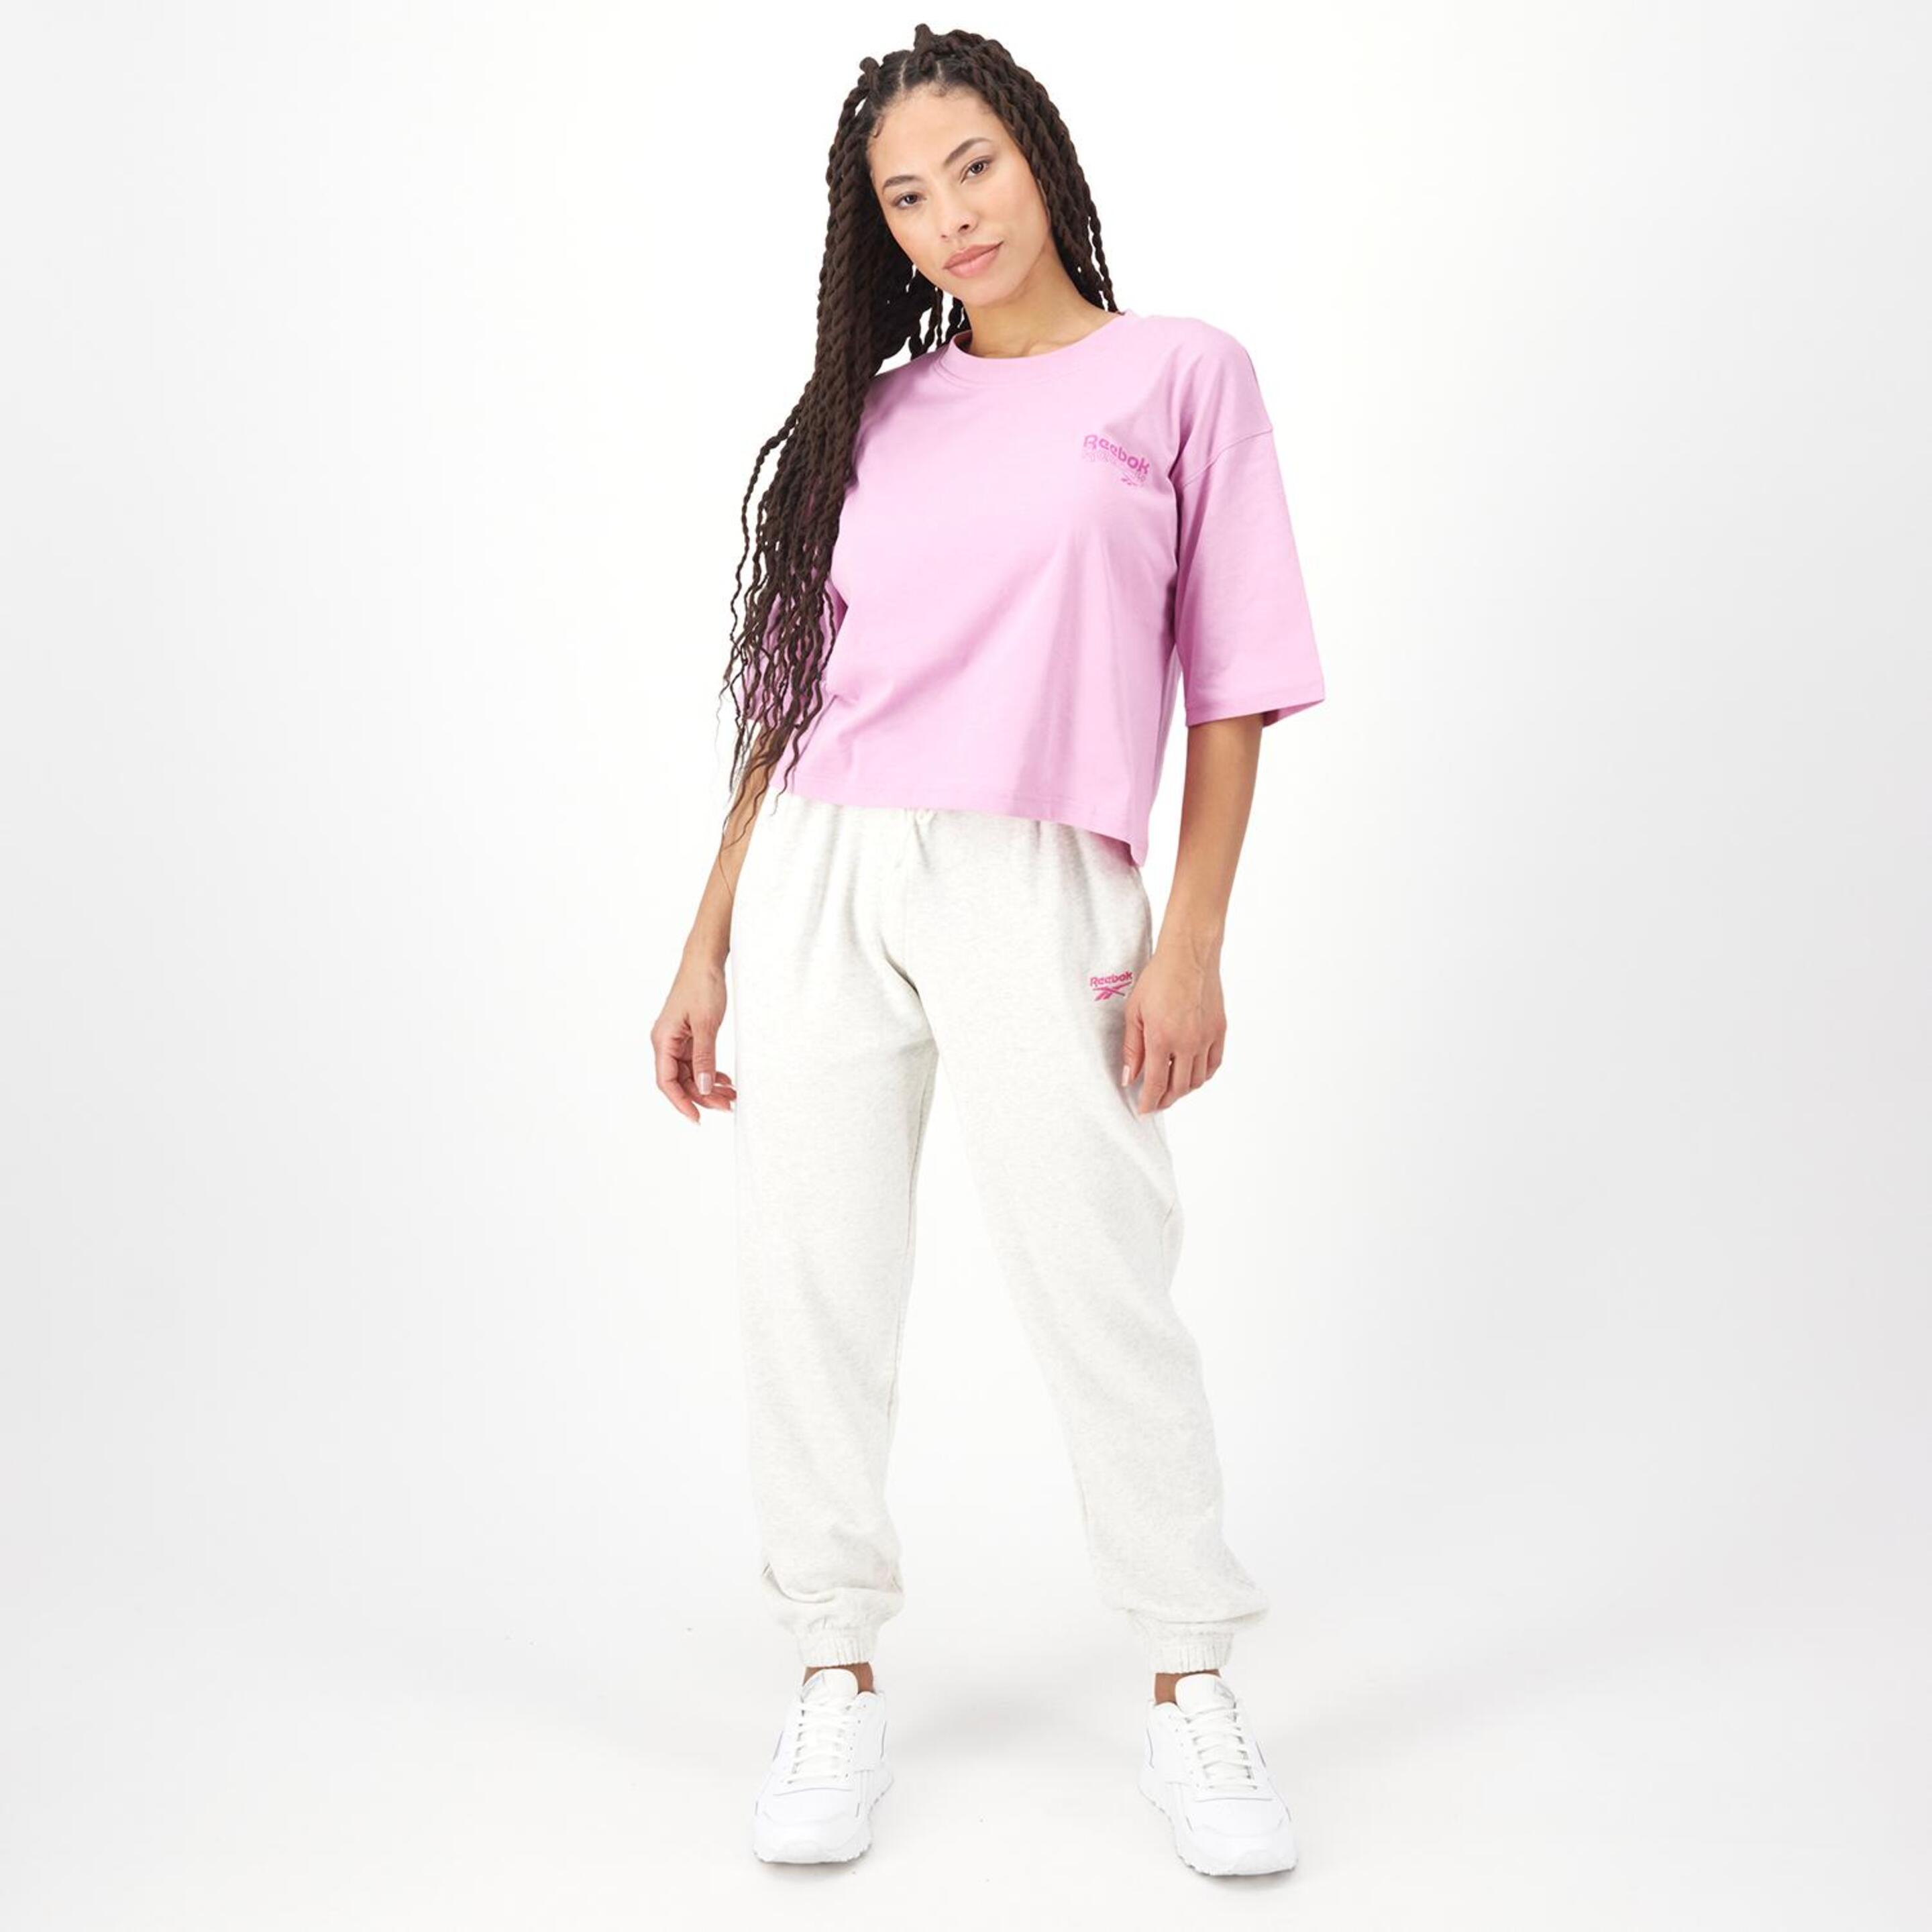 Reebok Rie - Rosa - Camiseta Boxy Mujer